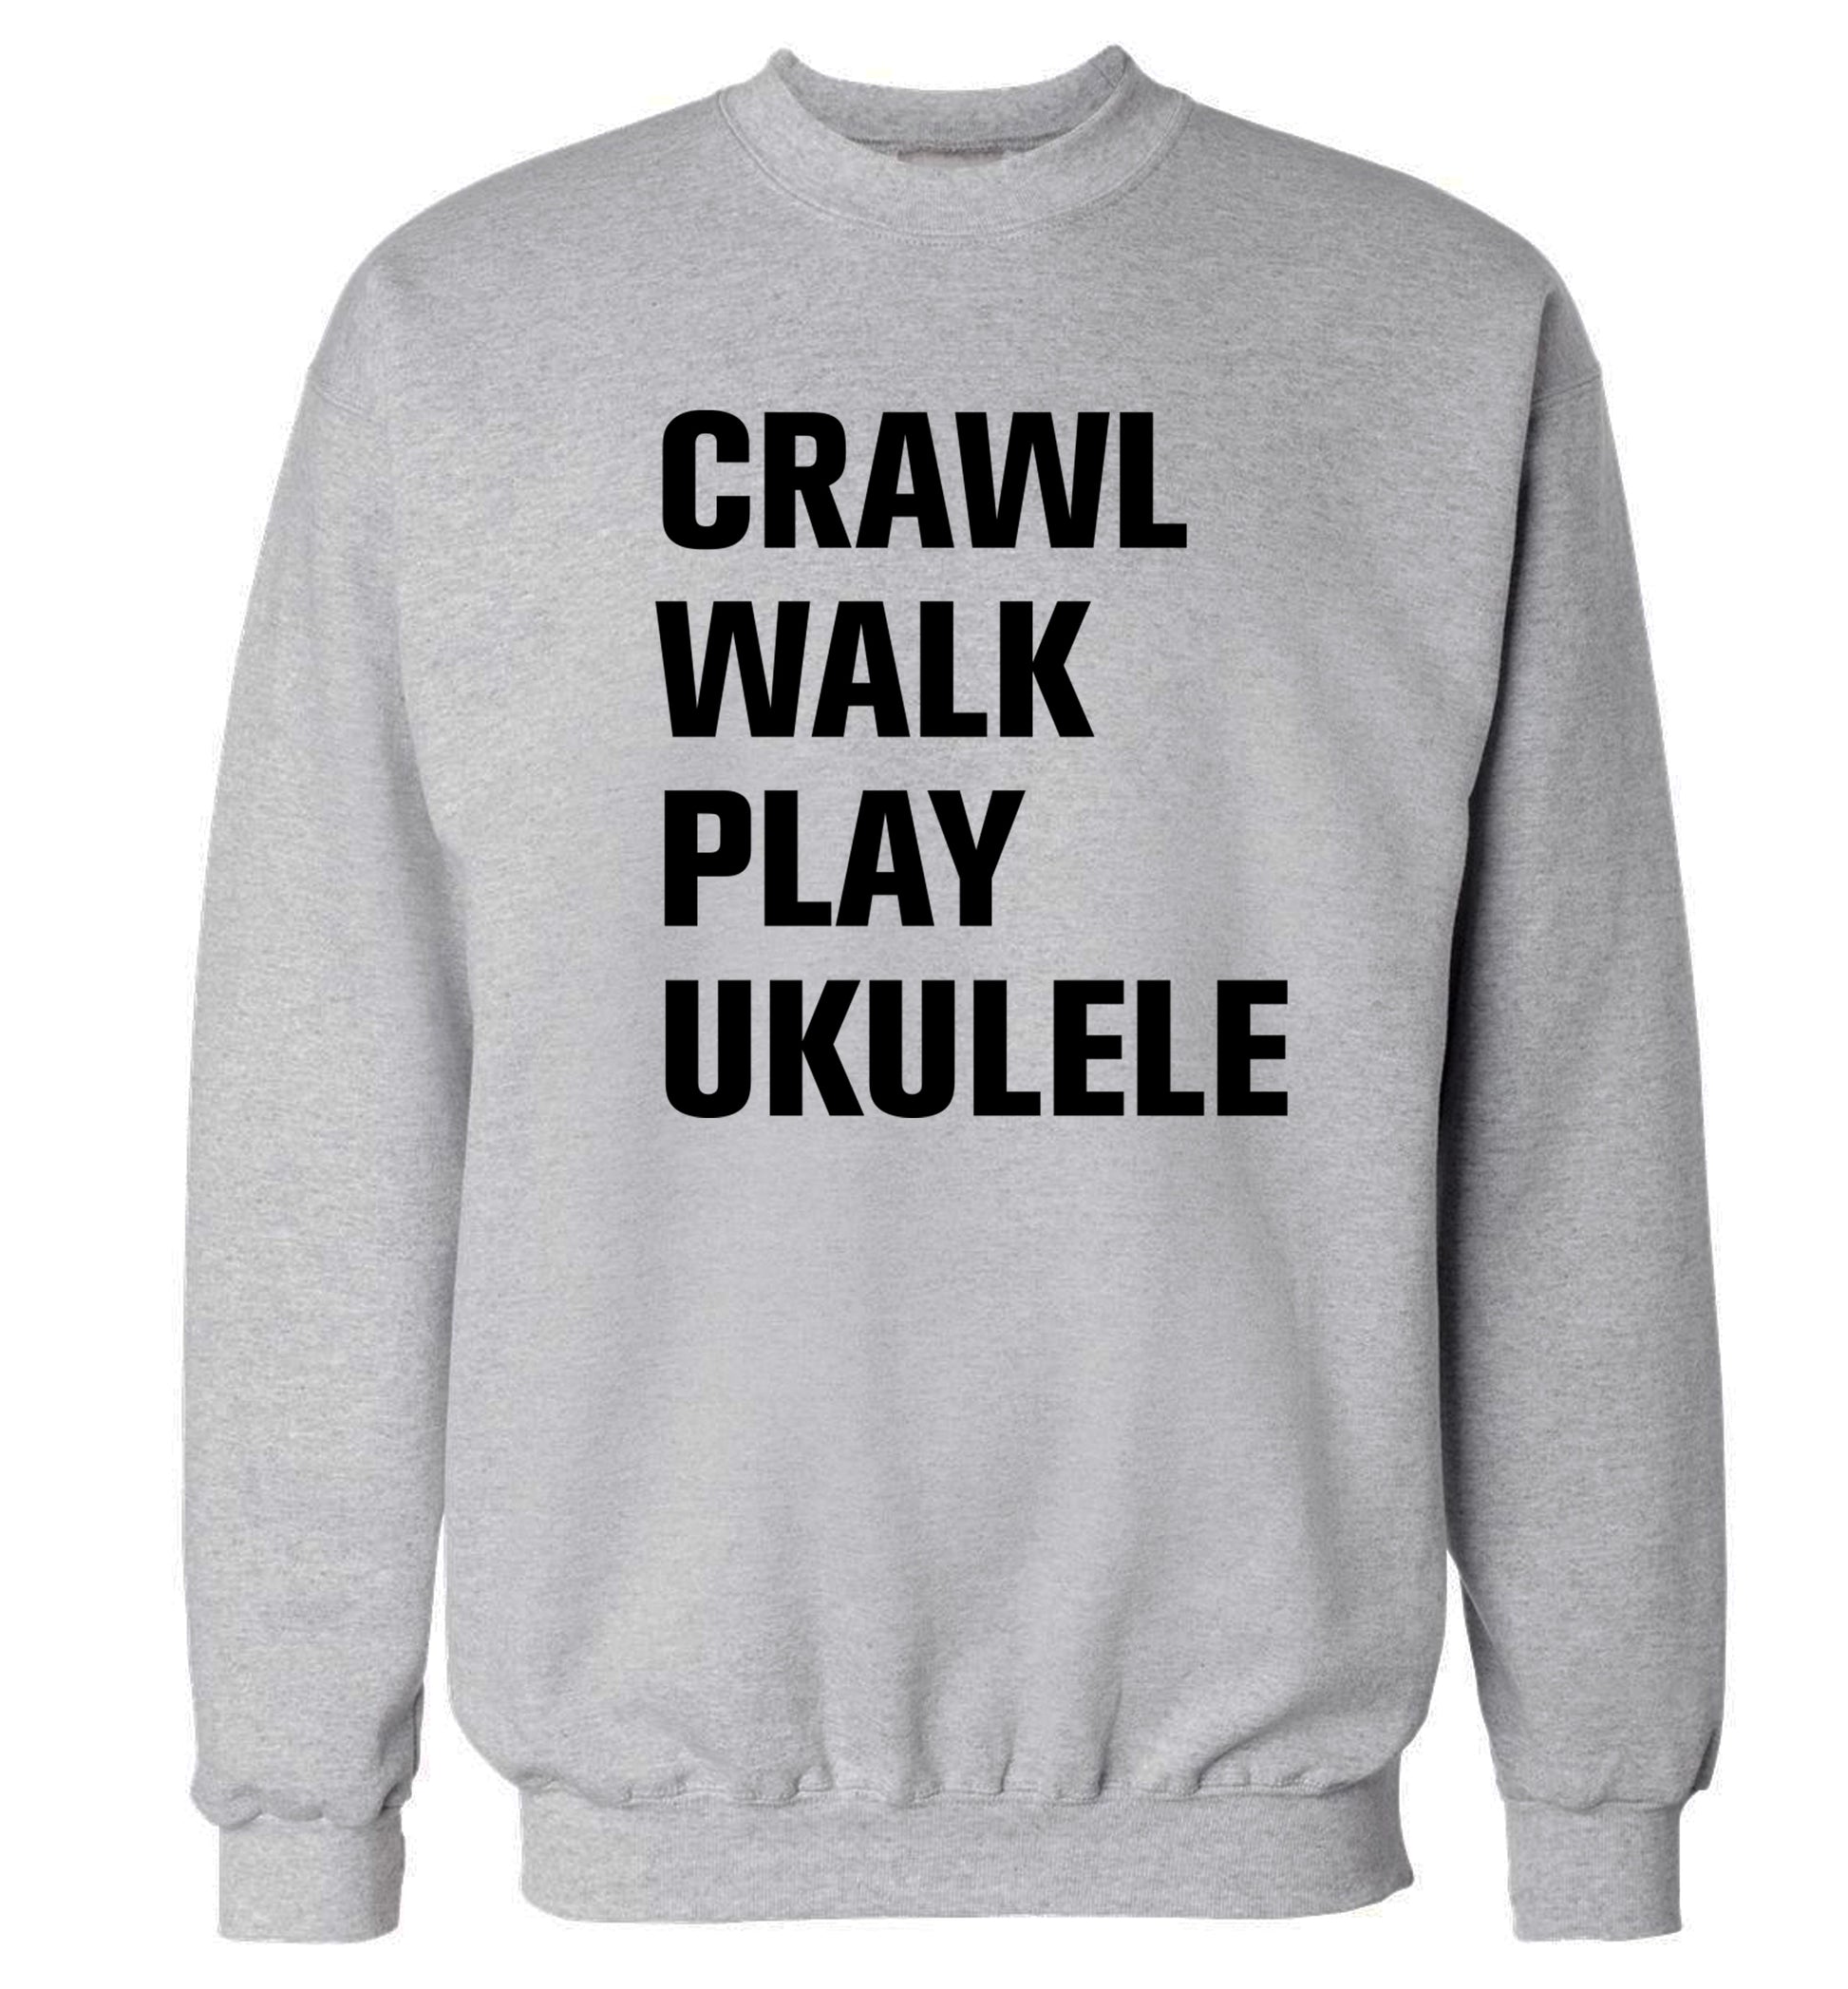 Crawl walk play ukulele Adult's unisex grey Sweater 2XL